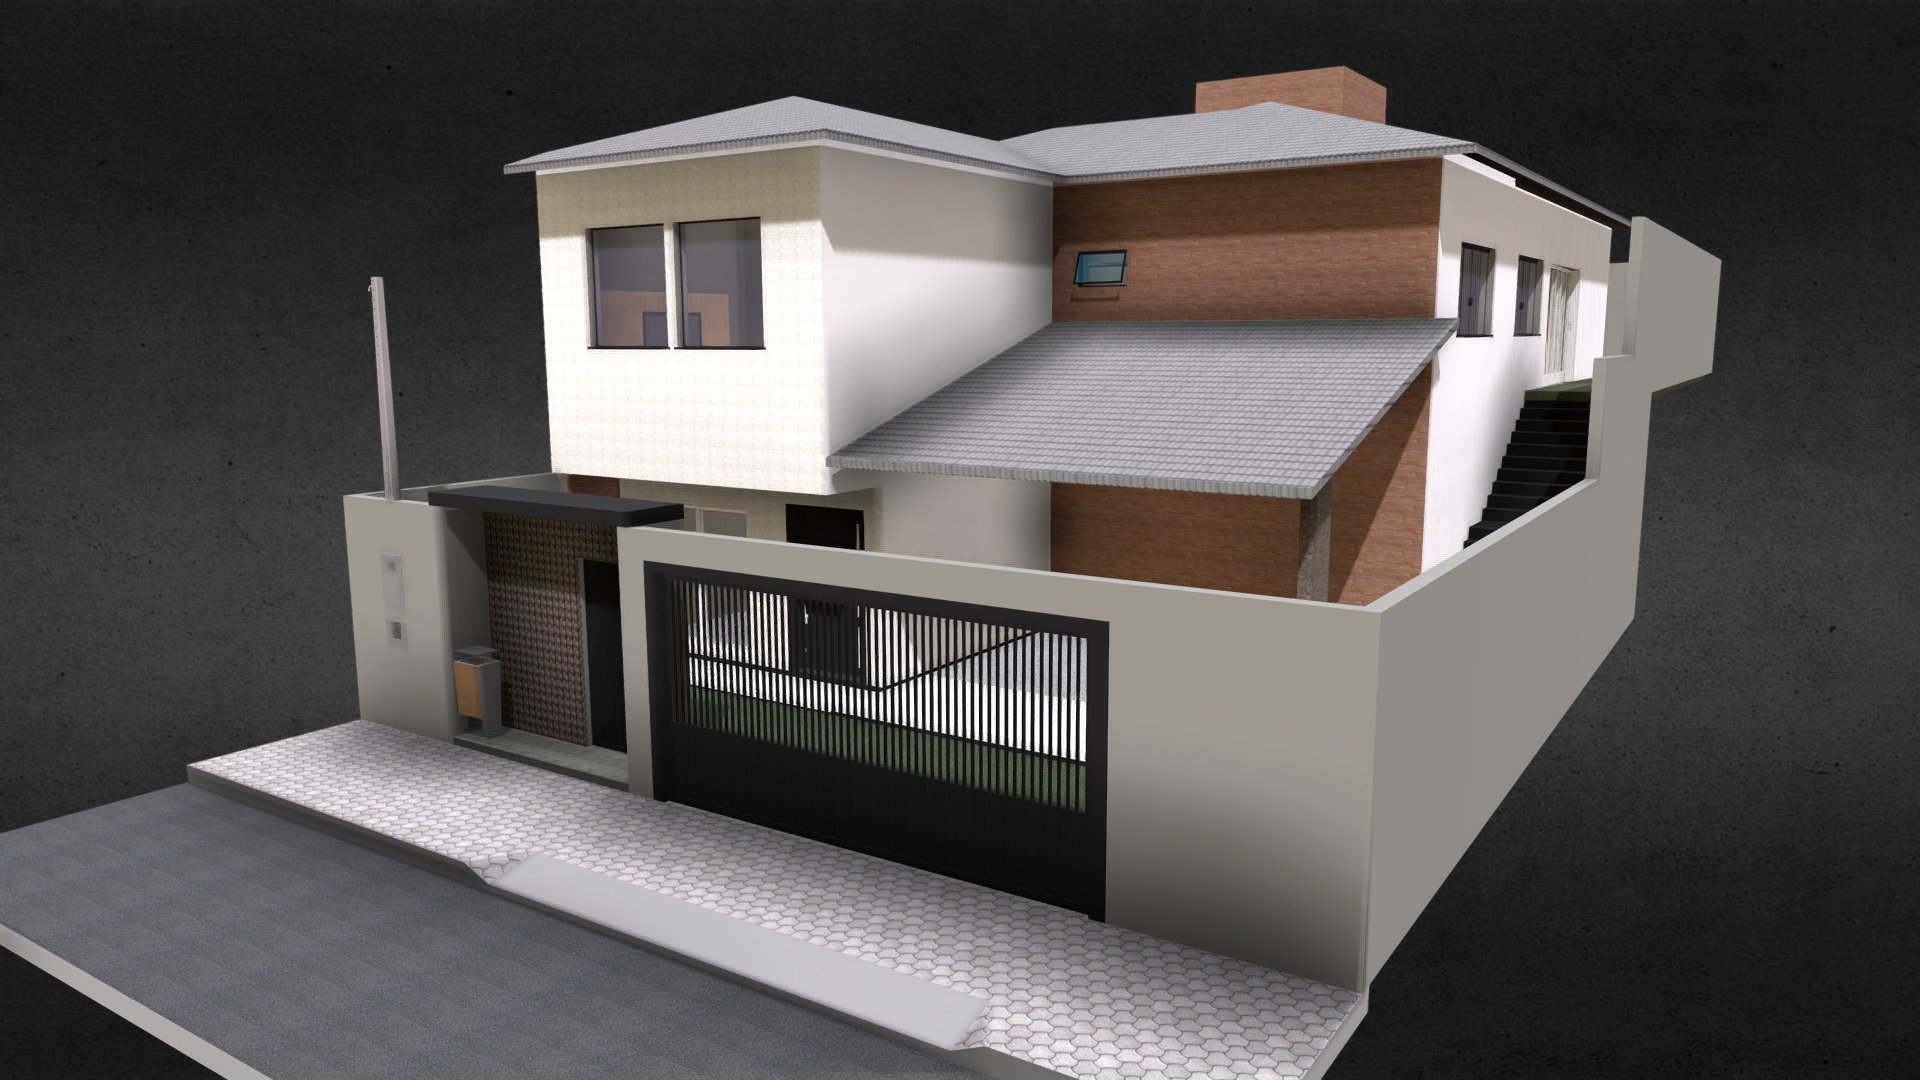 Elaboração projeto 3D residência unifamiliar
Autoria projeto - Delta Engenharia
Cidade Pouso Alegre/MG - Casa I & H Ampliação - 3D model by kw.engenhariacivil 3d model